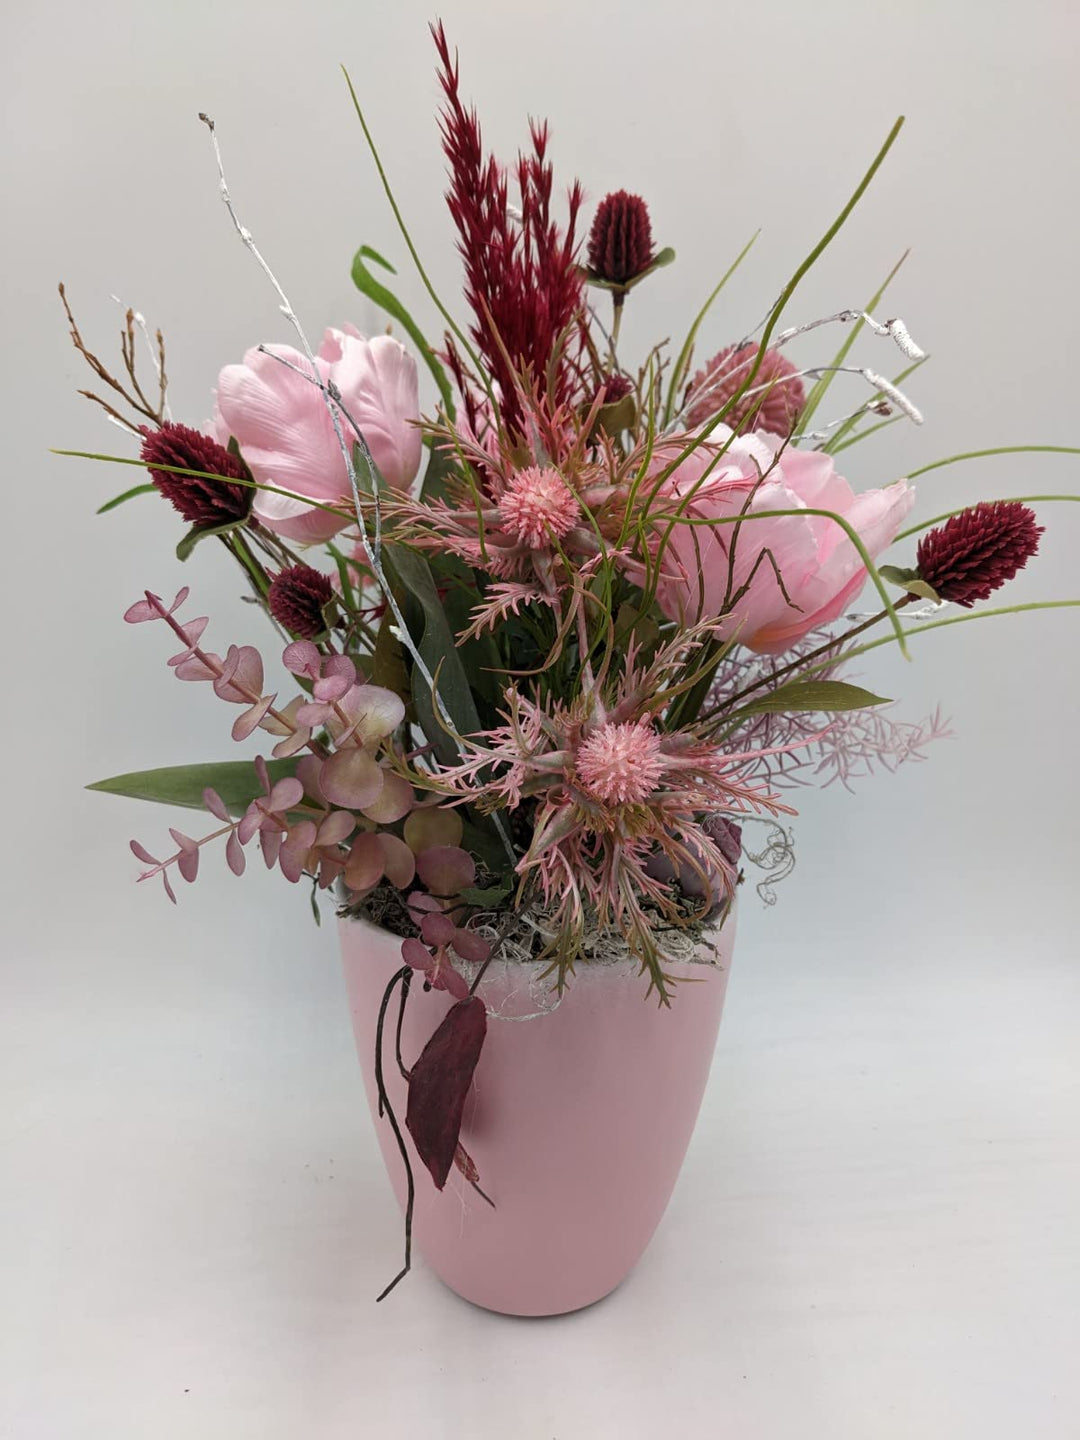 Tischgesteck Frühlingsgesteck Schnecke Blüten Beiwerk Gräser rosa dunkelrot